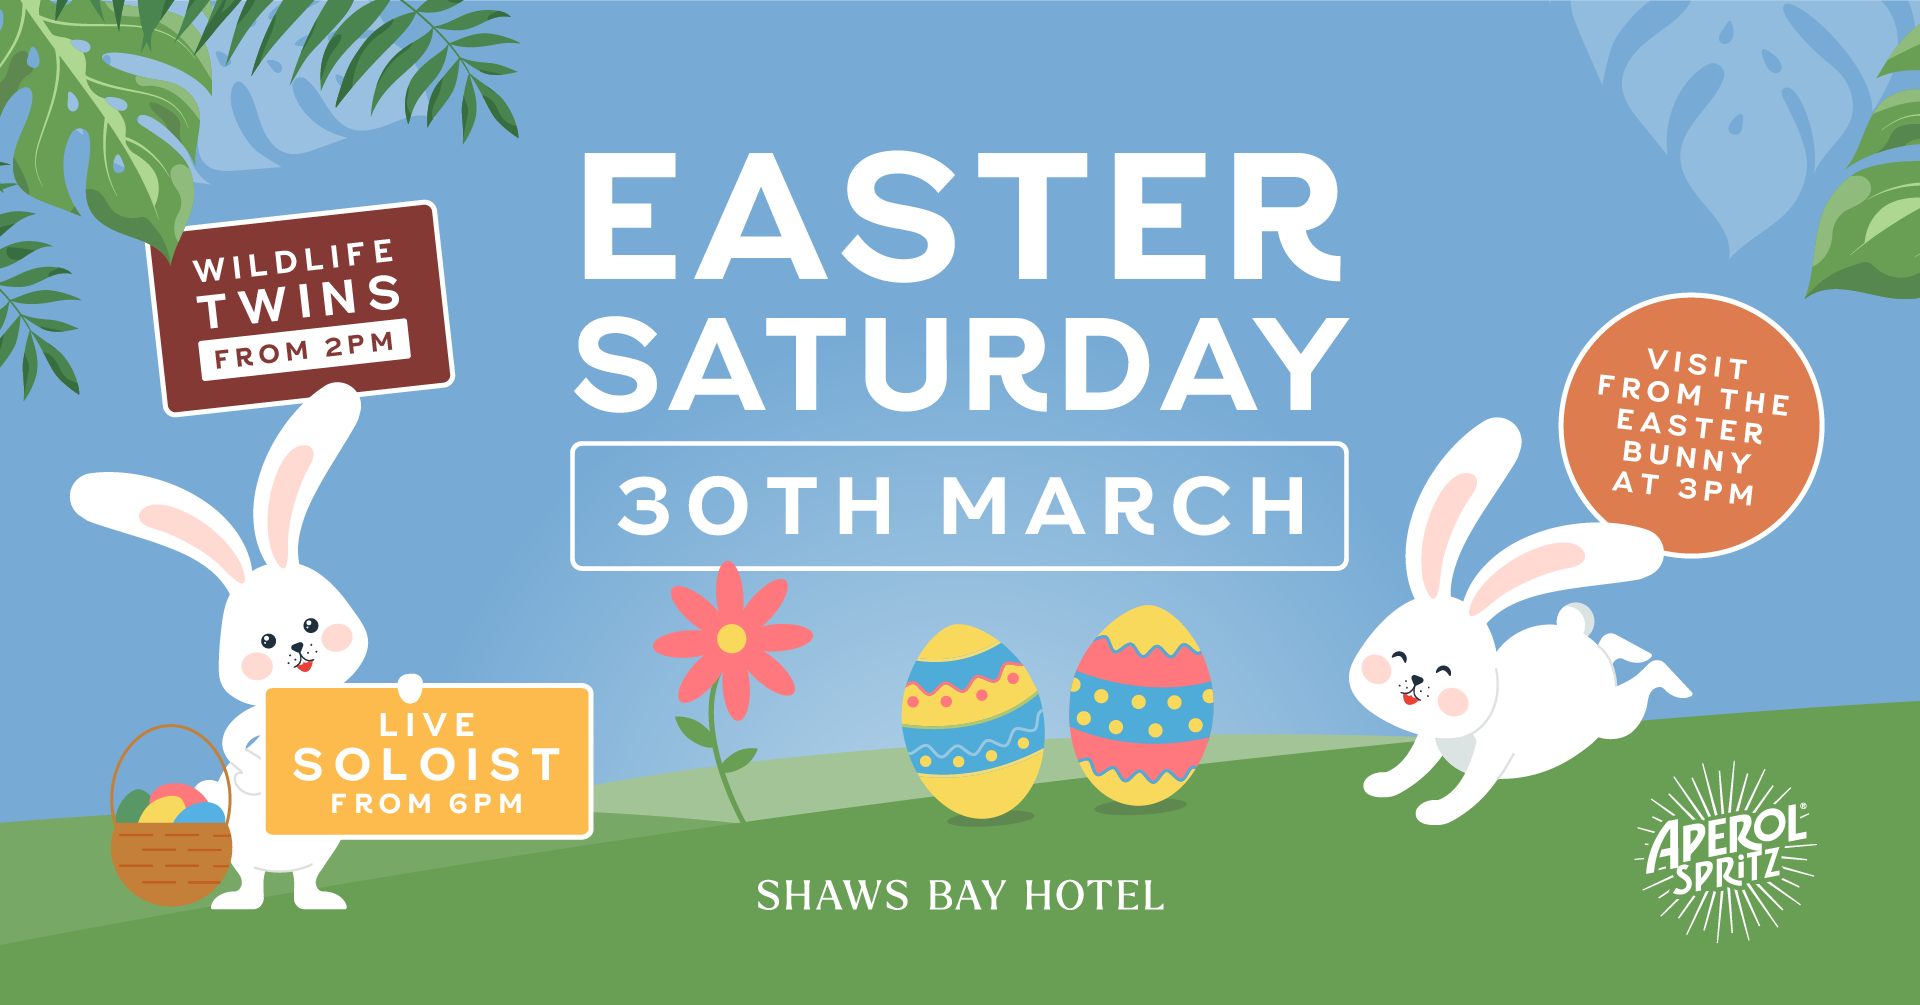 Easter Saturday at Shaws Bay Hotel